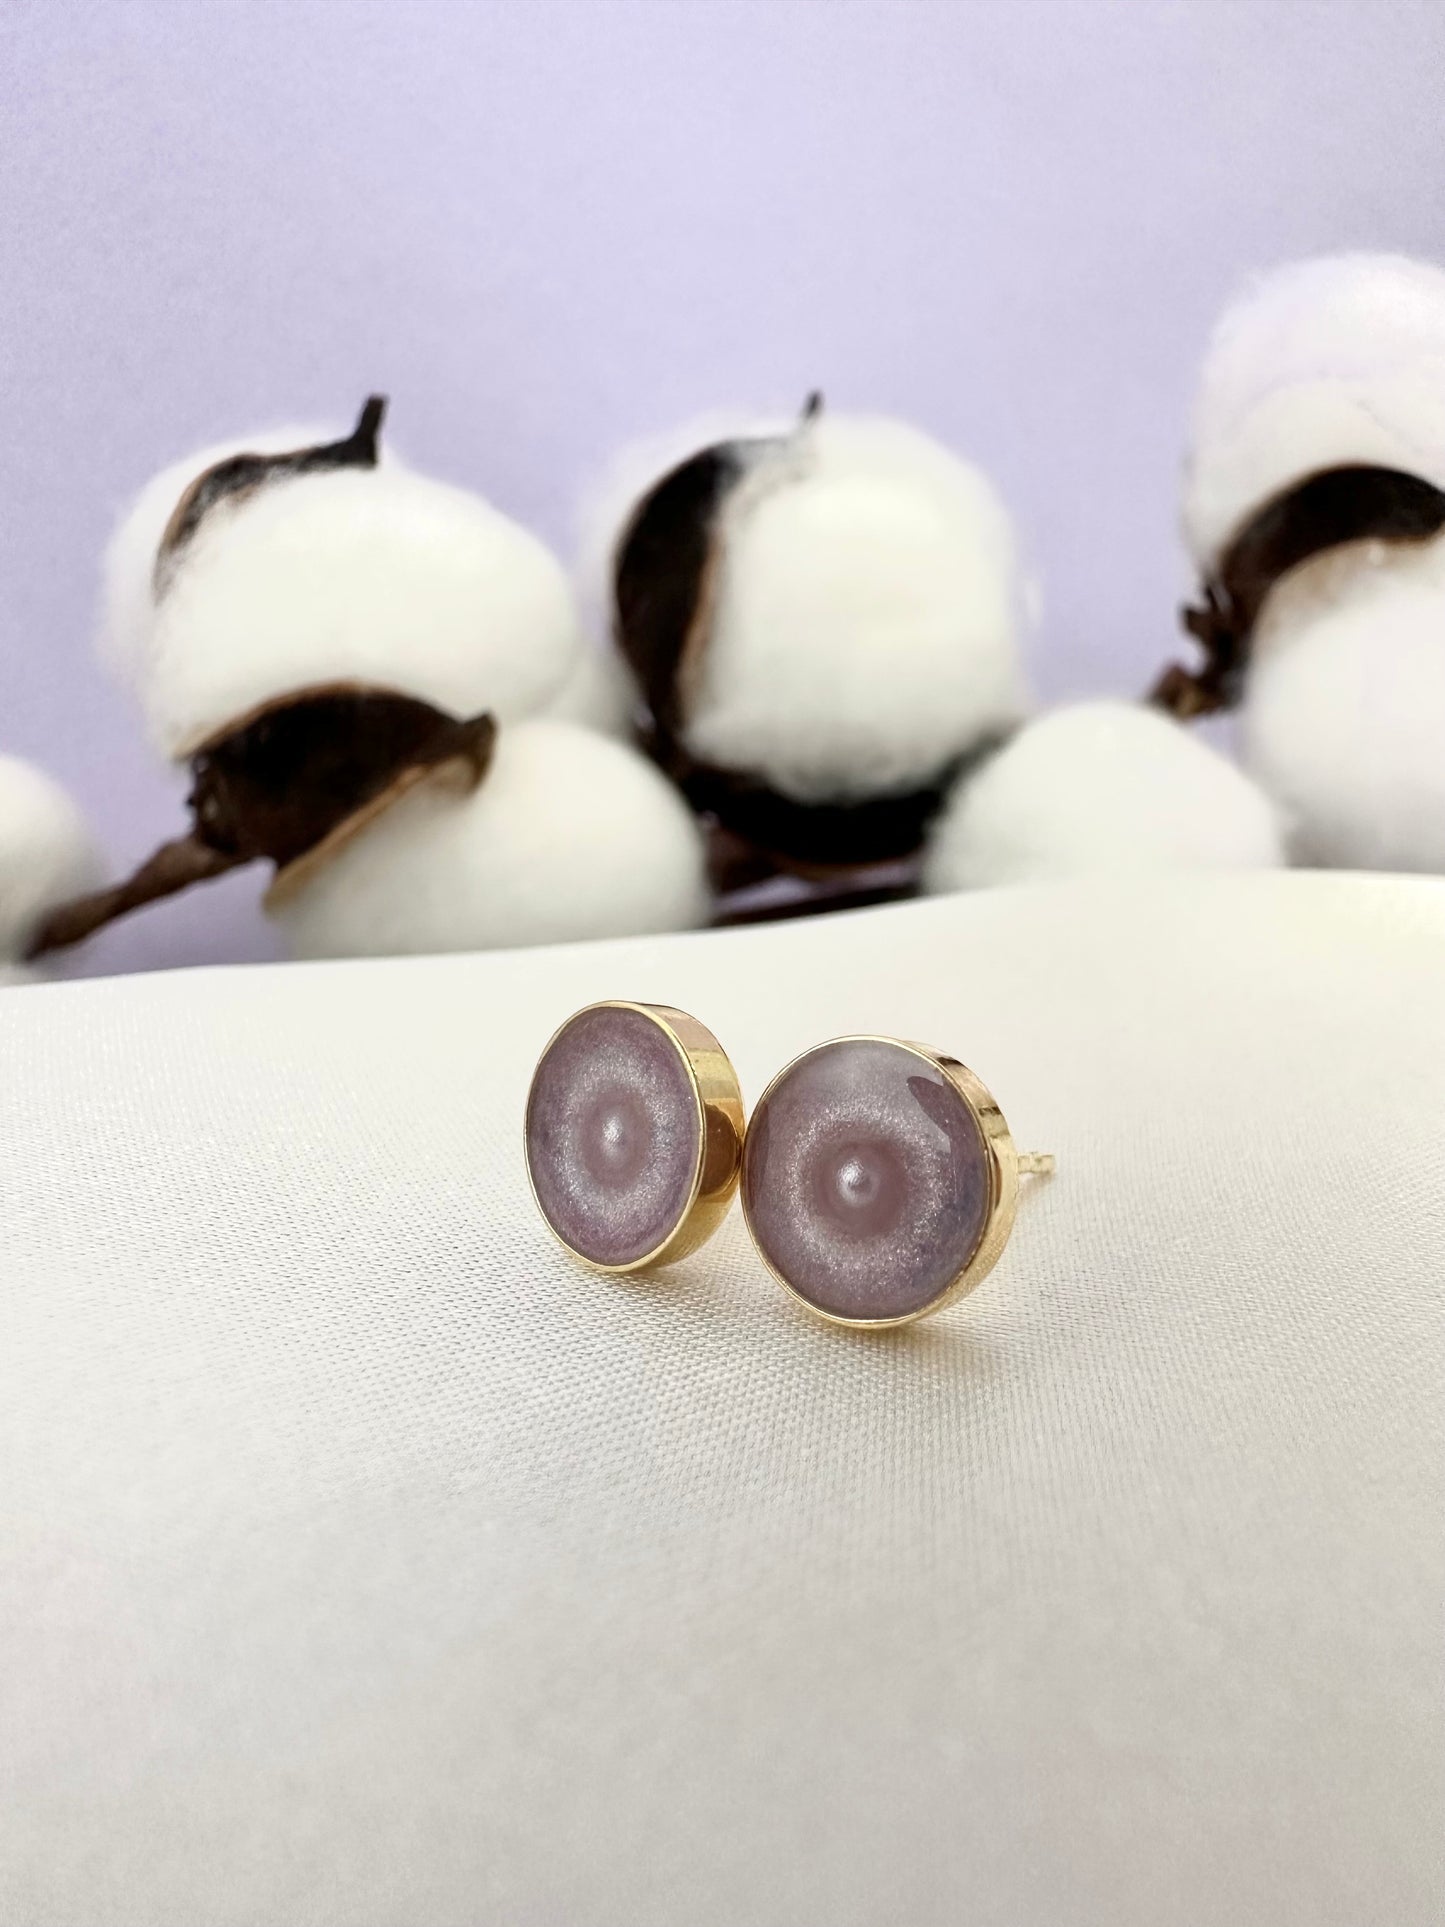 Gentle pink earrings with pearl